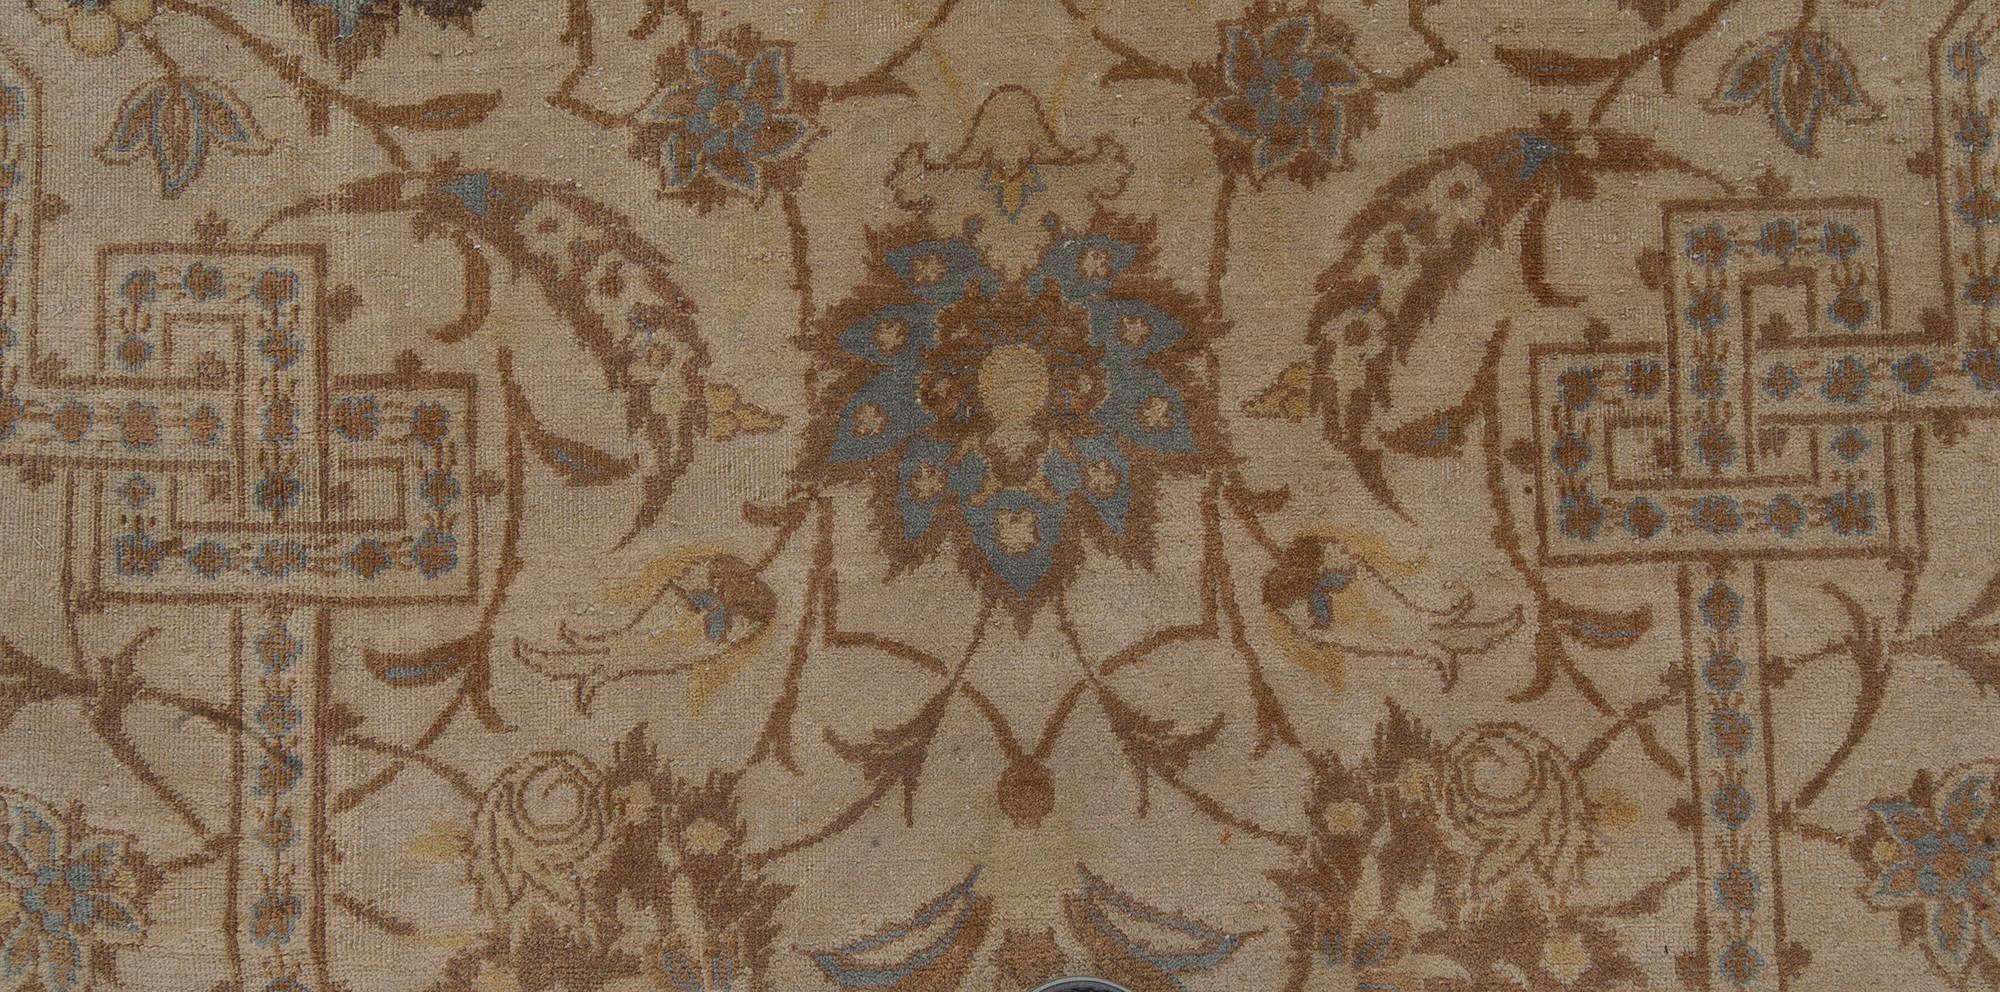 Antique Persian Kashan botanic rug
Size: 13'0